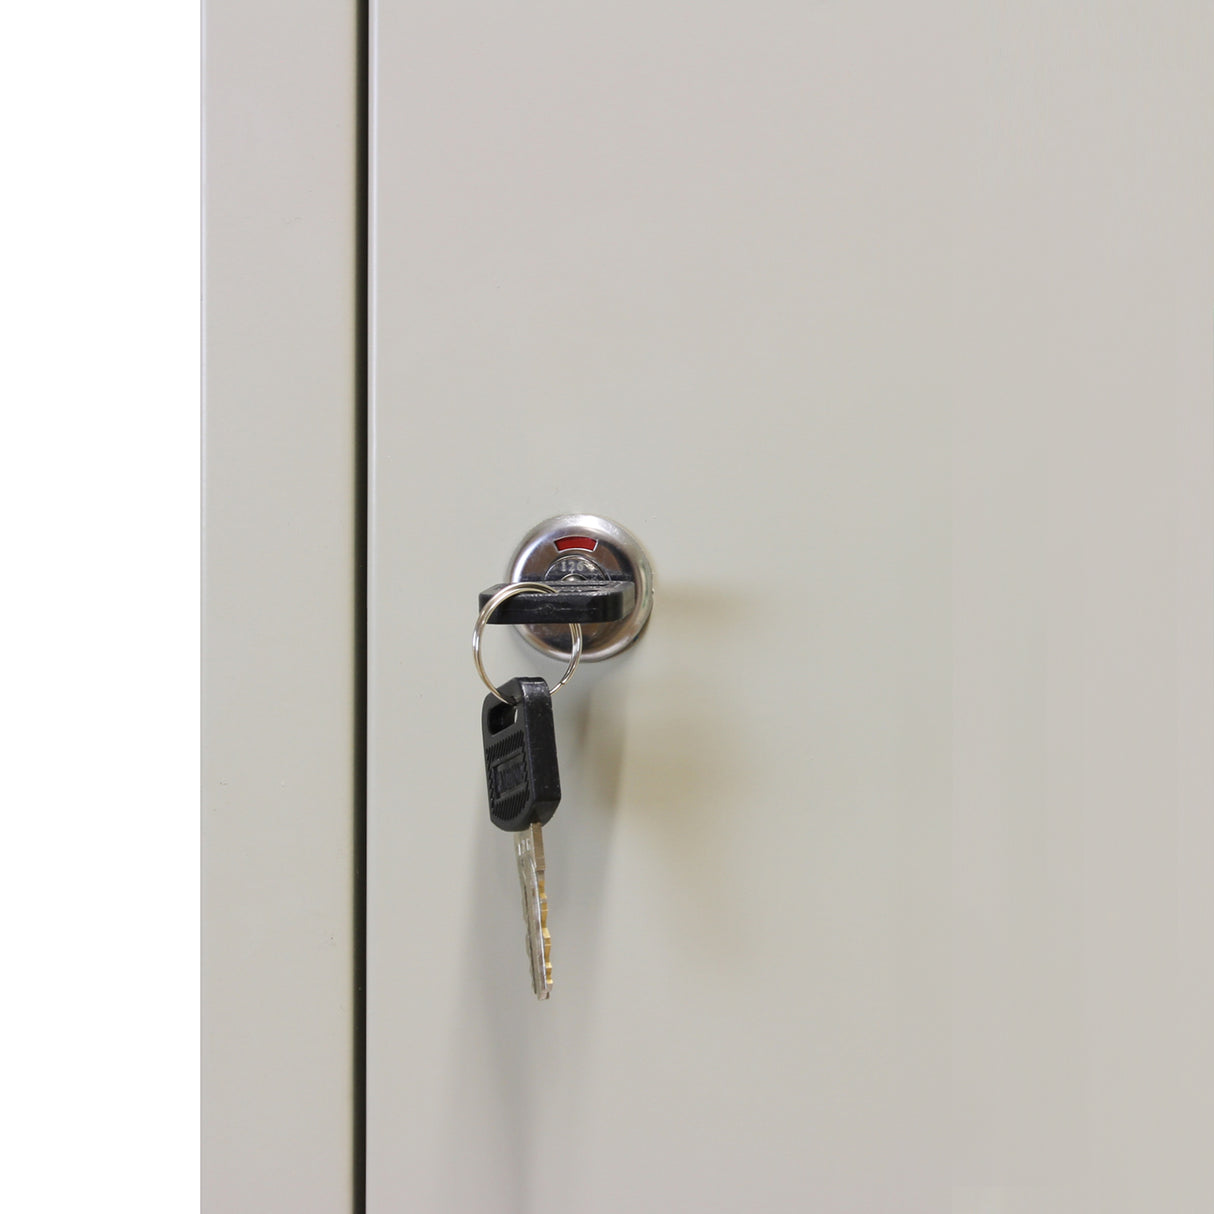 Metal Storage Lockers - Three Doors, Grey